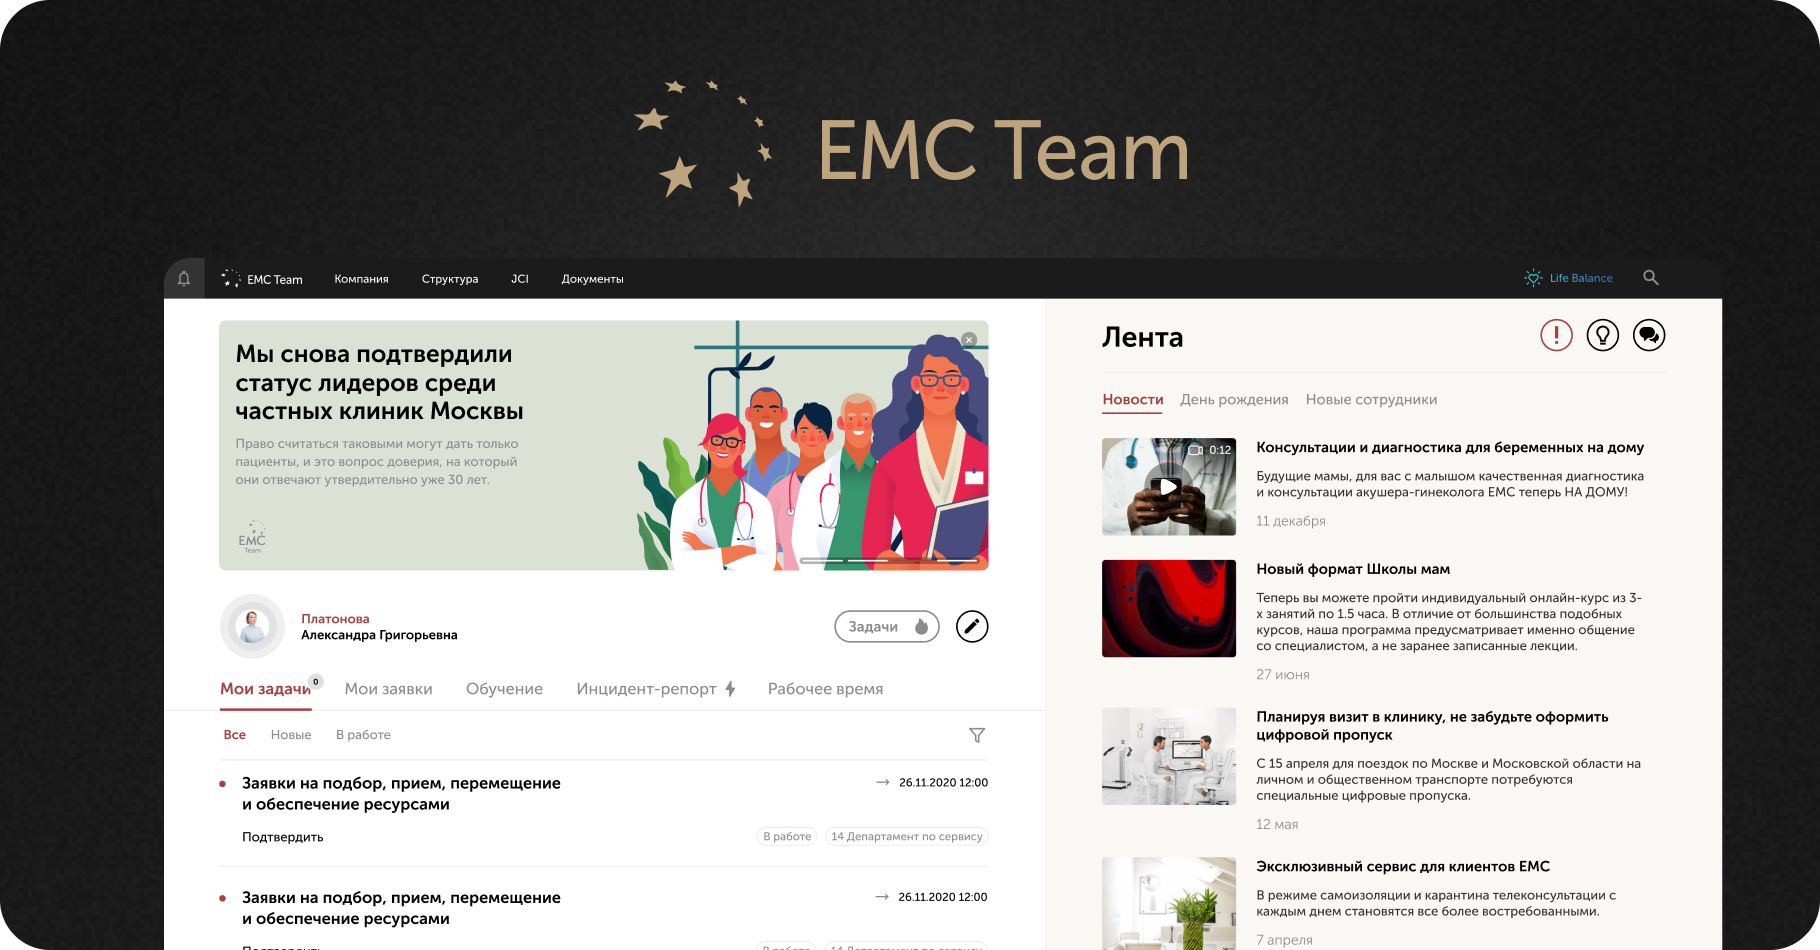 Корпоративный портал для ЕМС Team